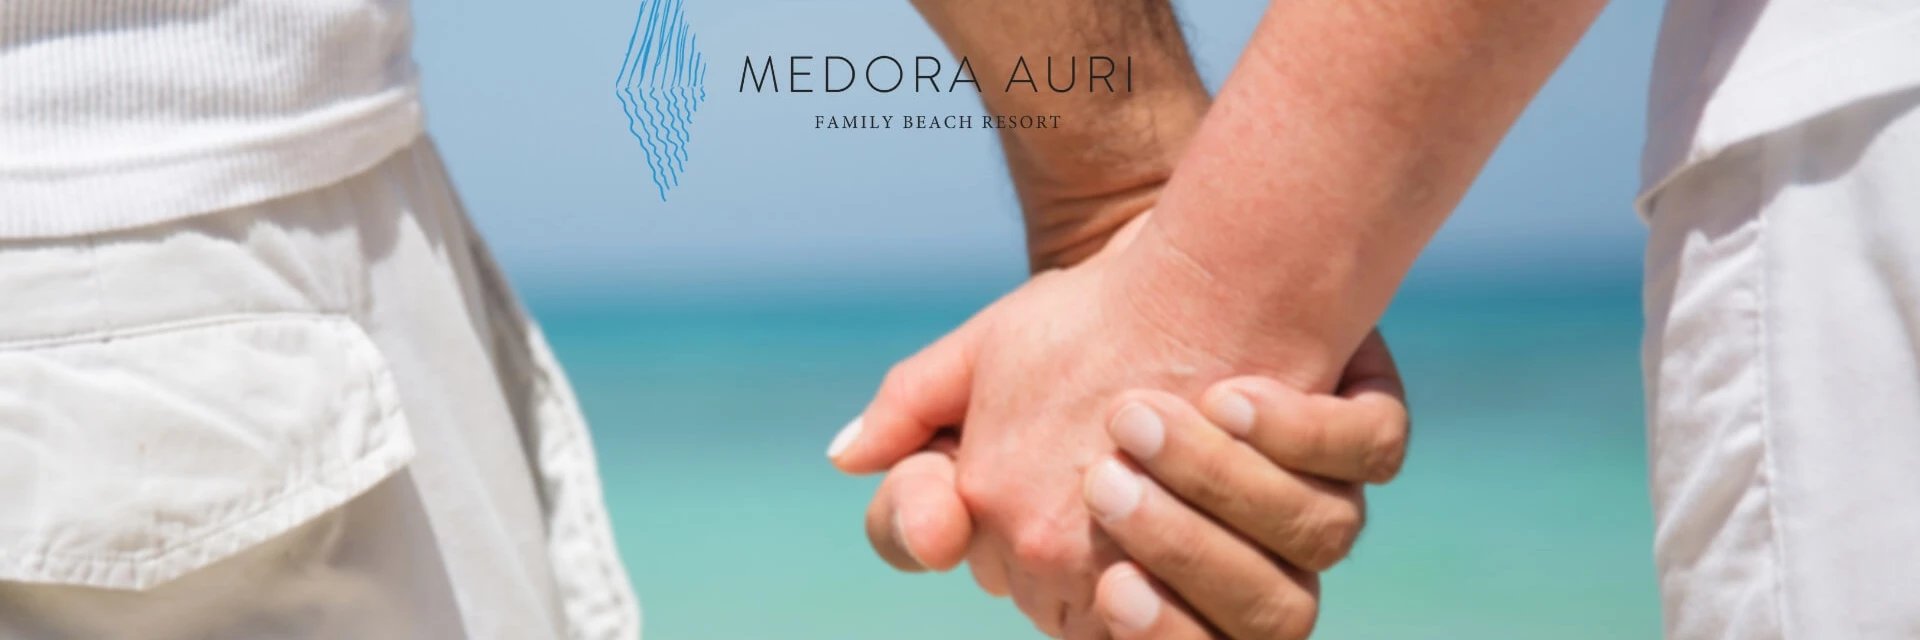 Medora Auri: Ferienhäuser für Paare